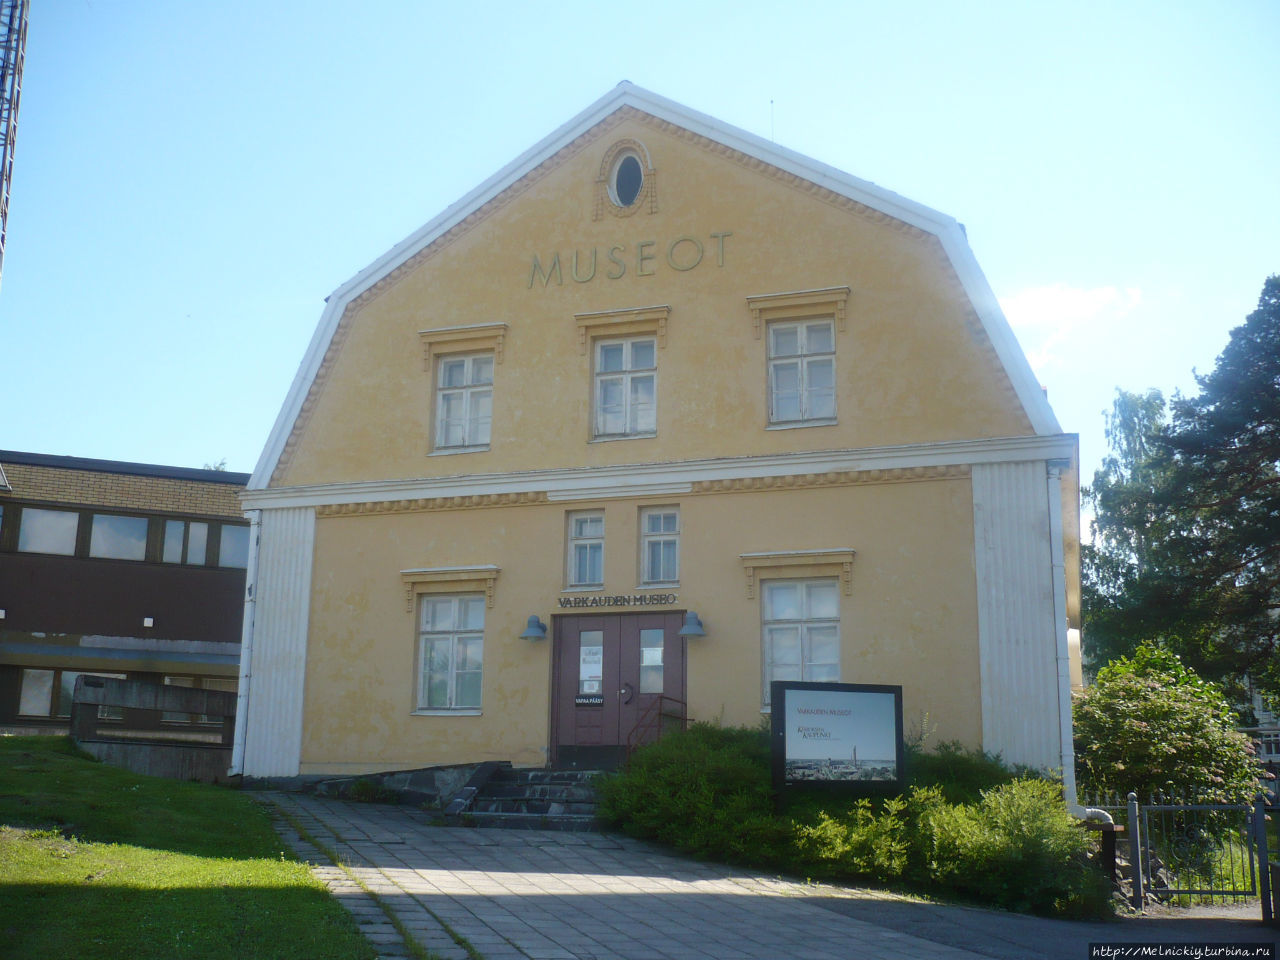 Музей Варкауса и художественная галерея Варкаус, Финляндия